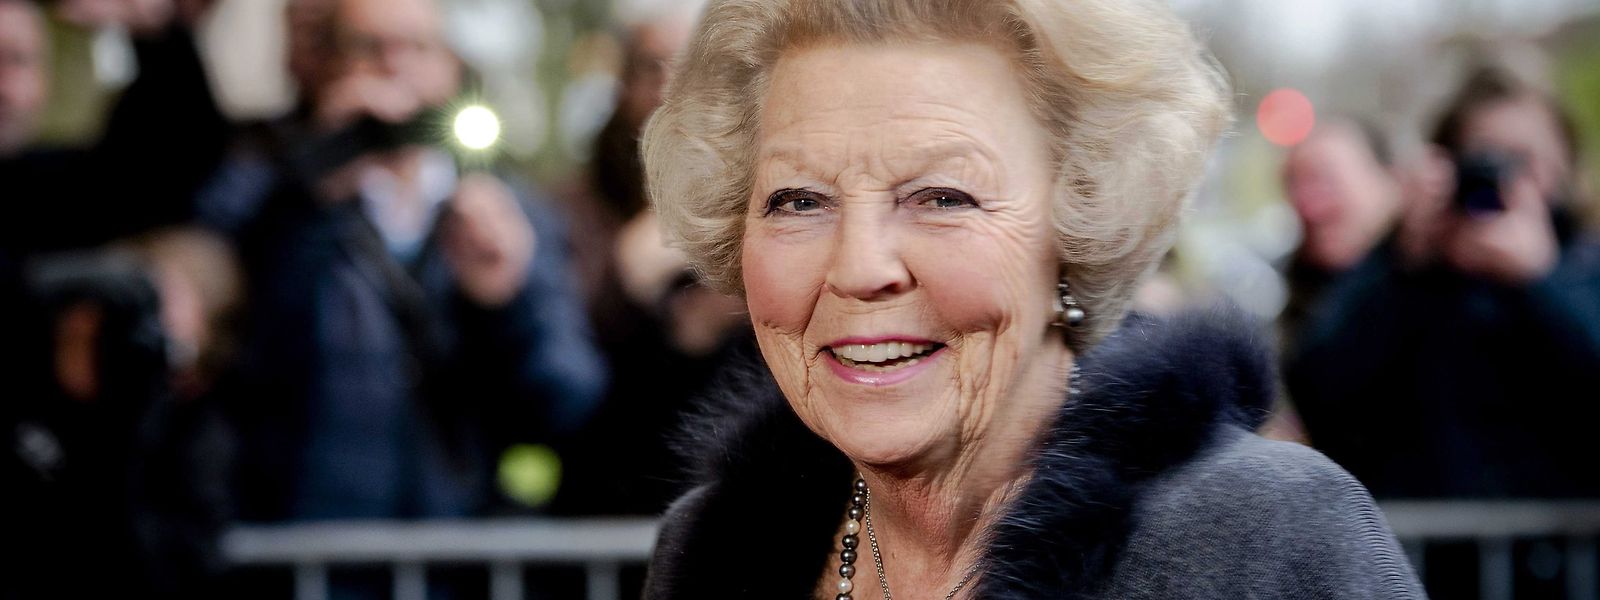 Prinzessin Beatrix feiert ihren 85. Geburtstag. 33 Jahre lang war sie Königin der Niederlande. 